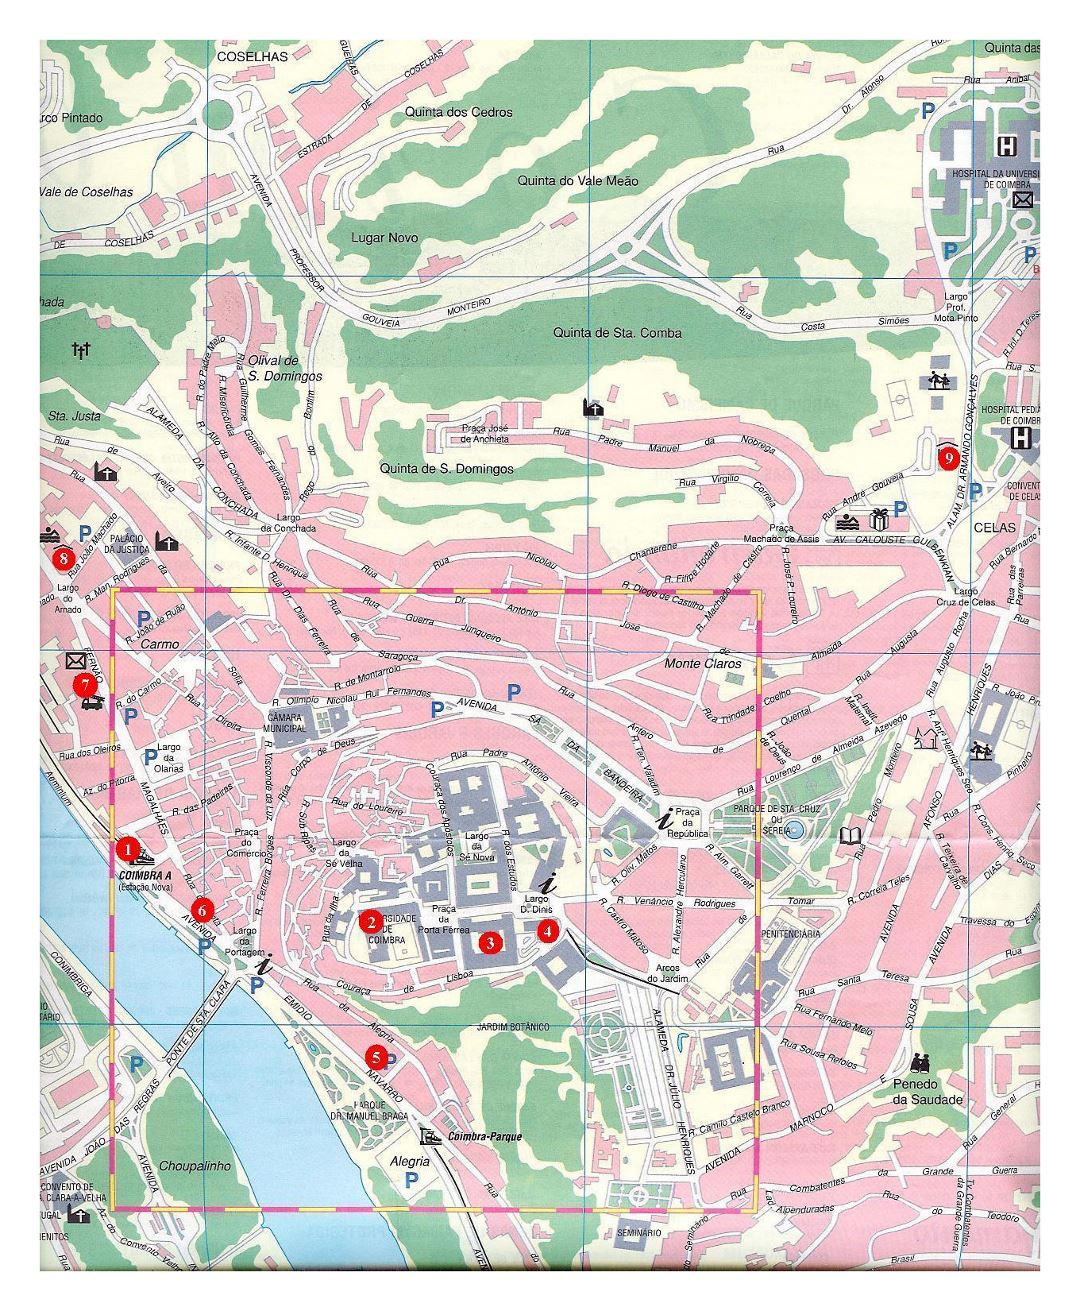 Grande viaje mapa de la ciudad de Coimbra